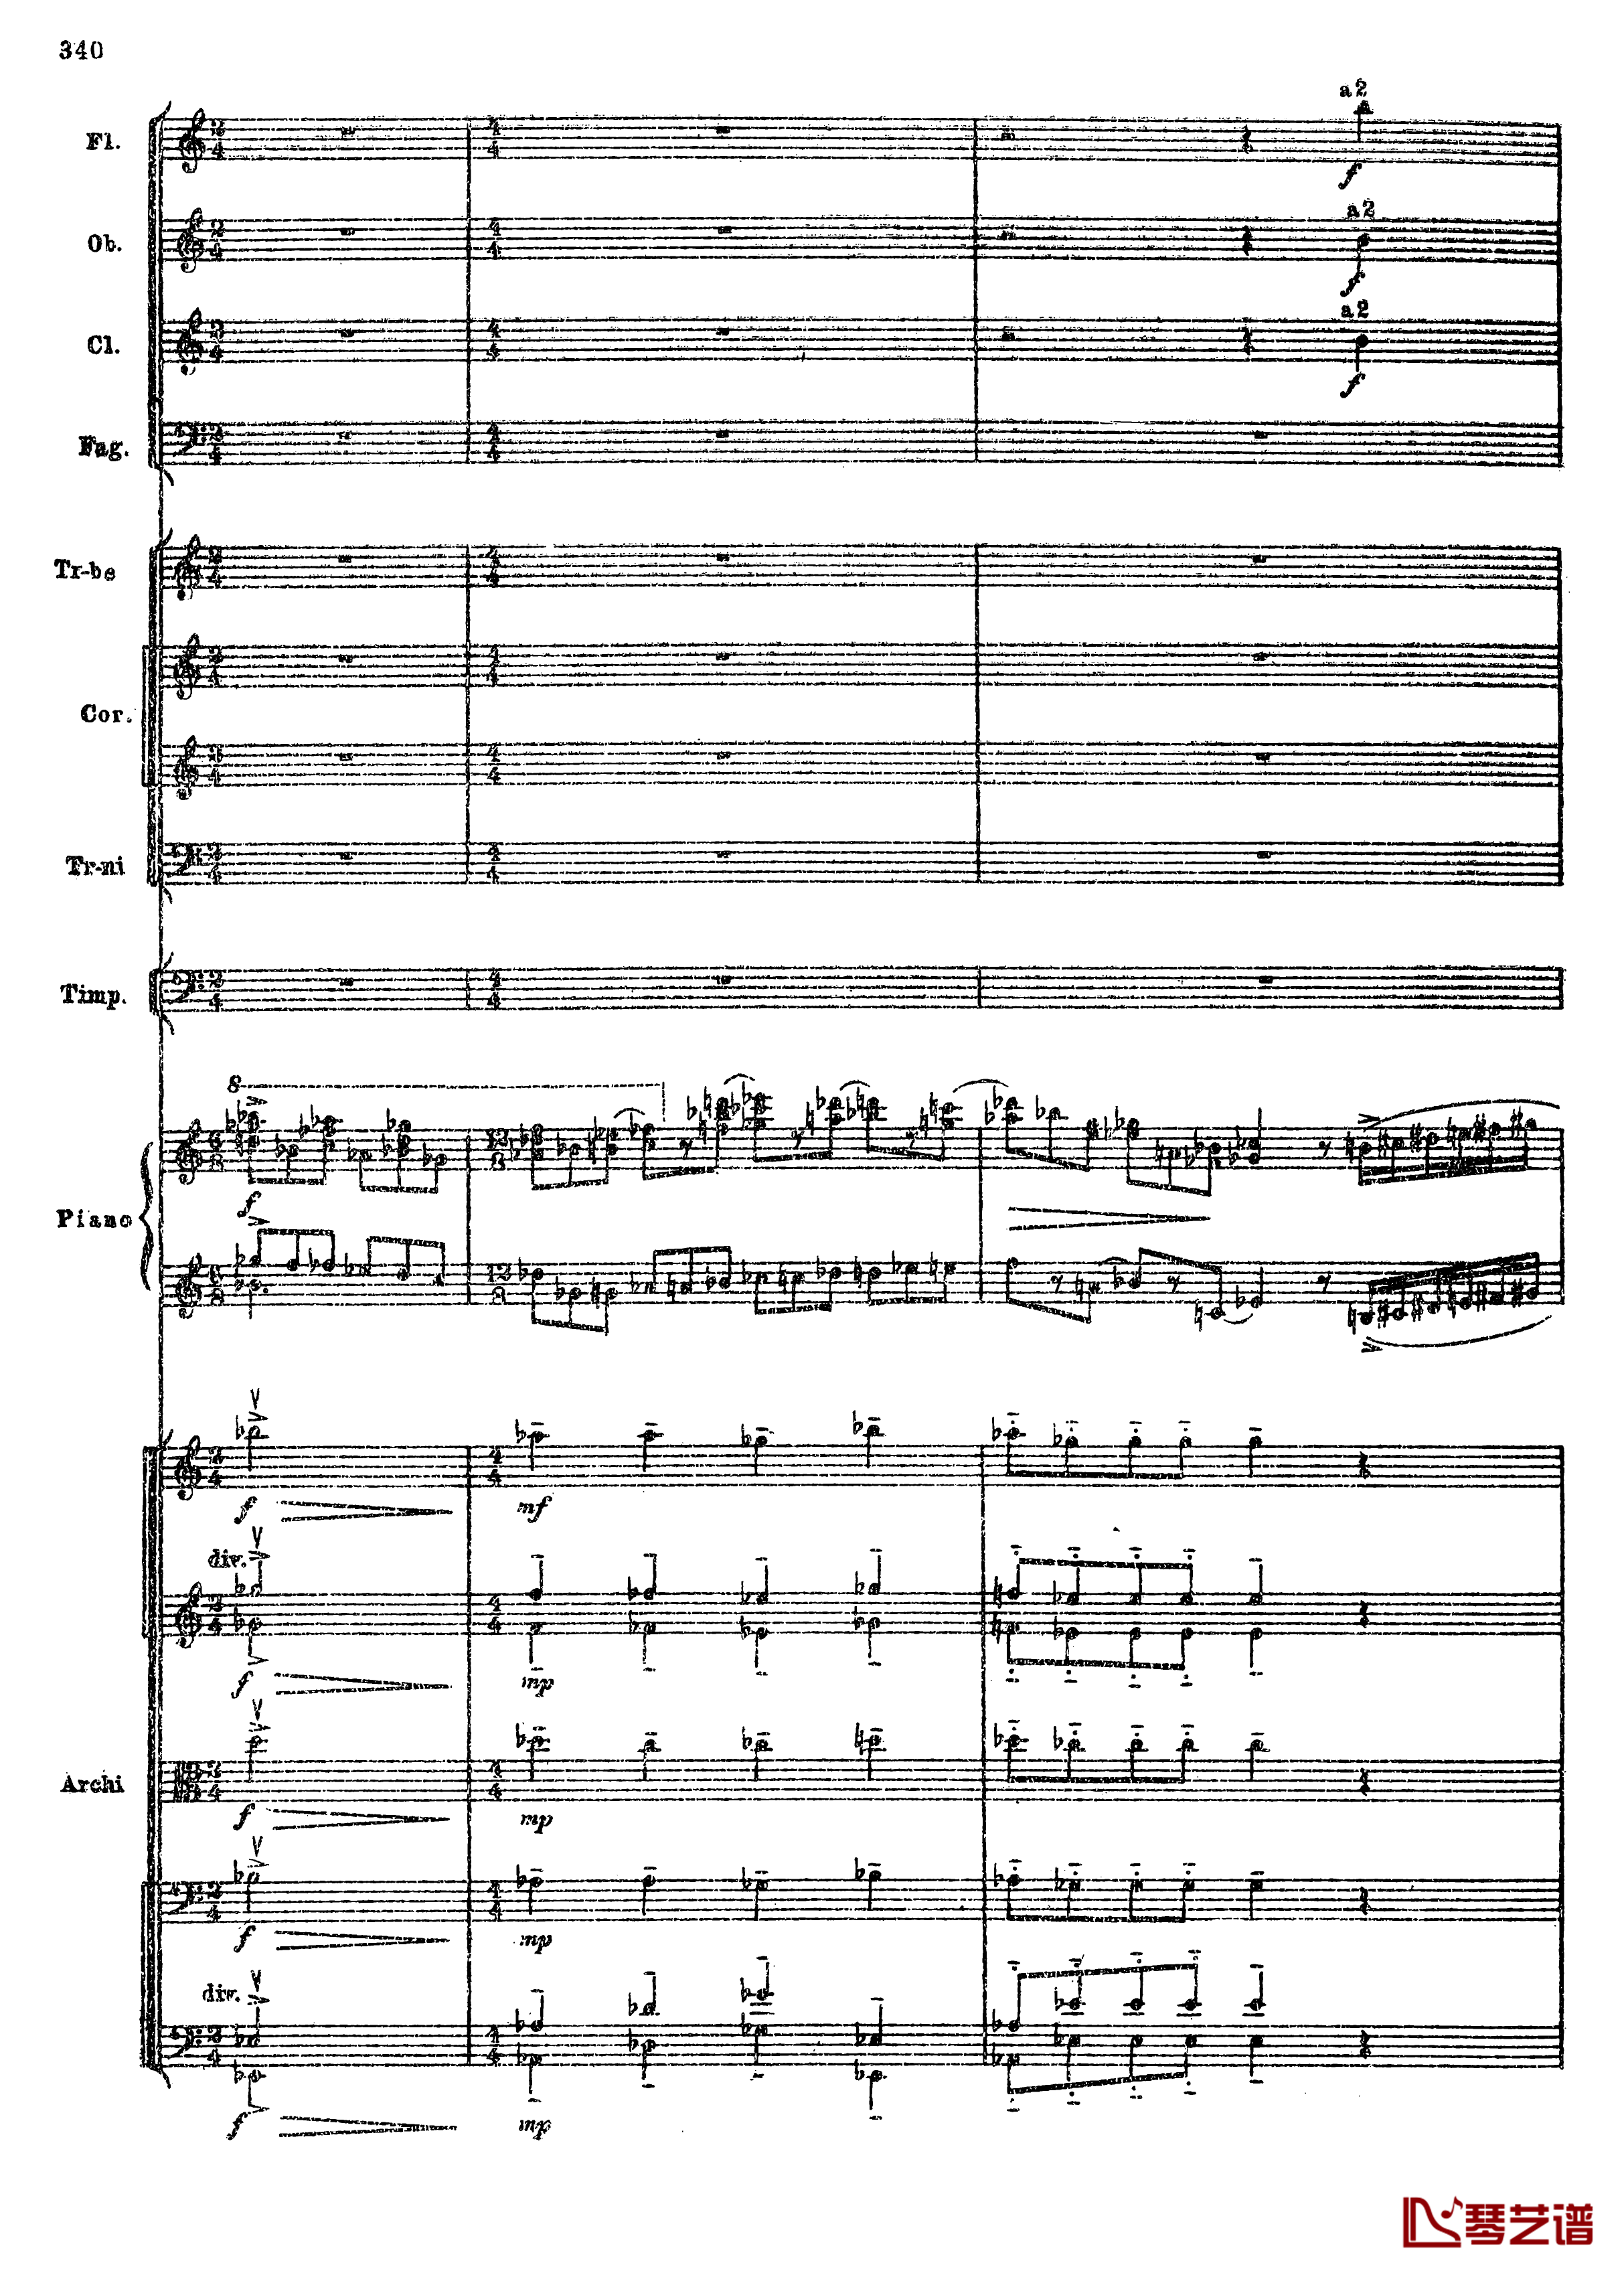 普罗科菲耶夫第三钢琴协奏曲钢琴谱-总谱-普罗科非耶夫72